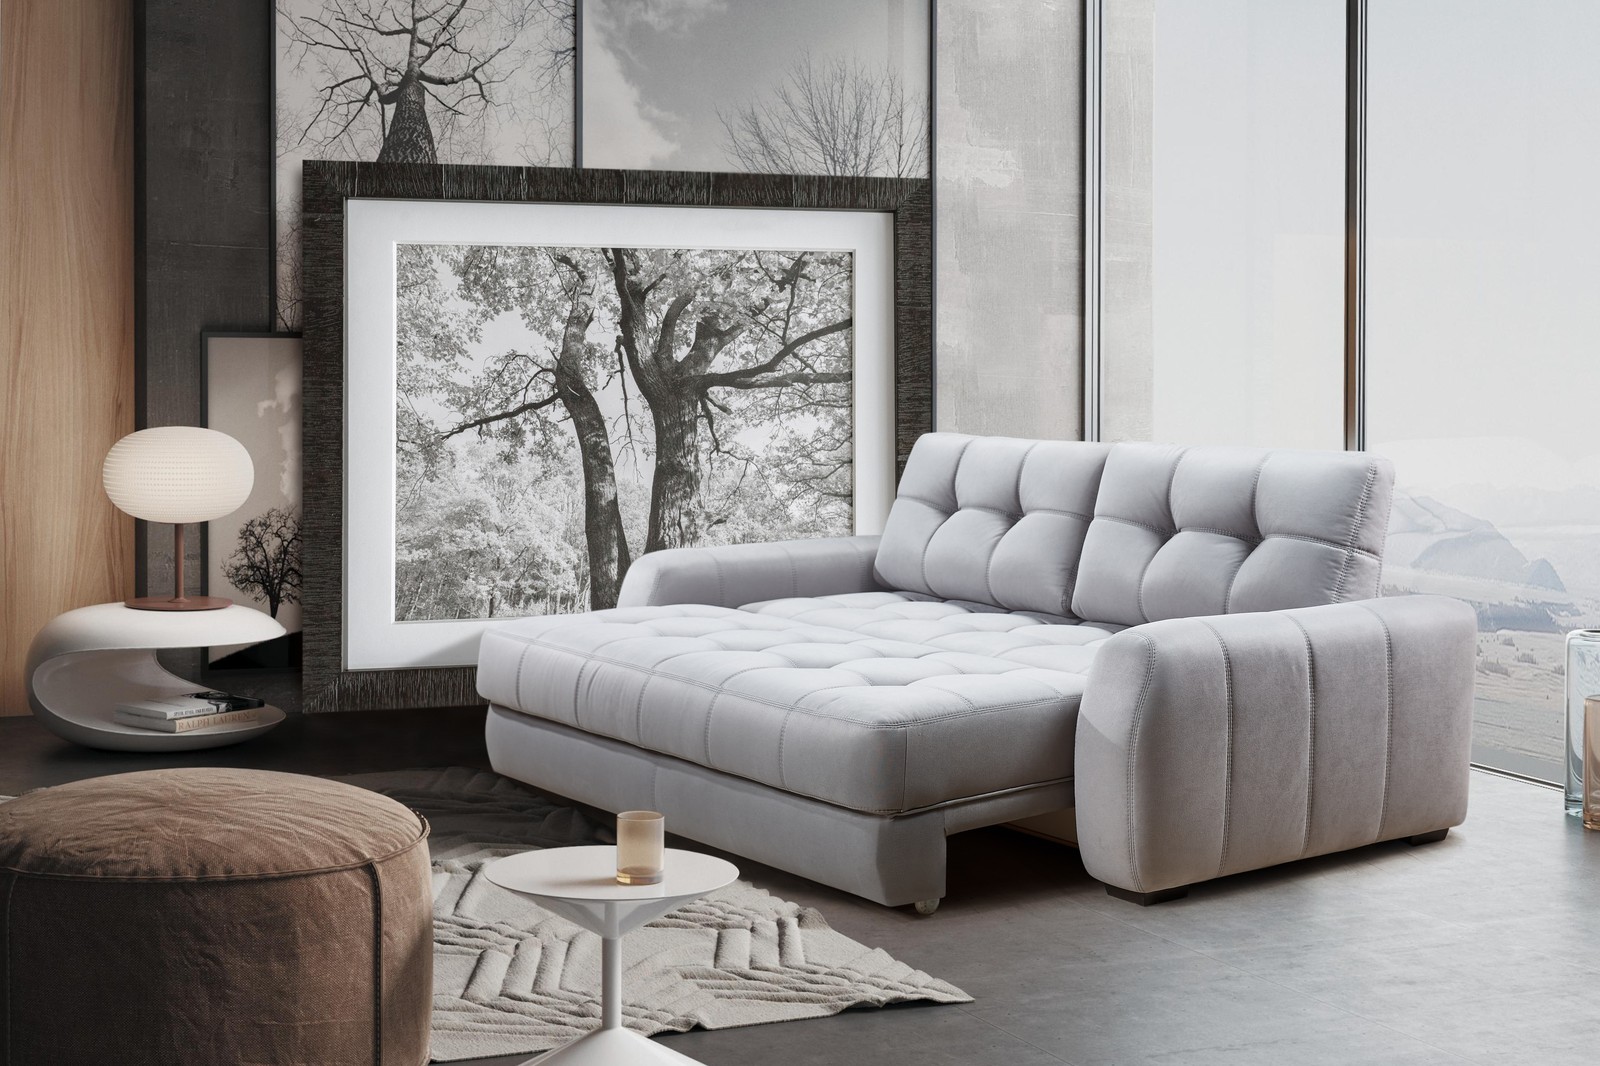 Какой диван выбрать для гостиной со спальным местом или без него? » Эксклюзивные модульные диваны и мягкая мебель от производителя - фабрика Gray Cardinal